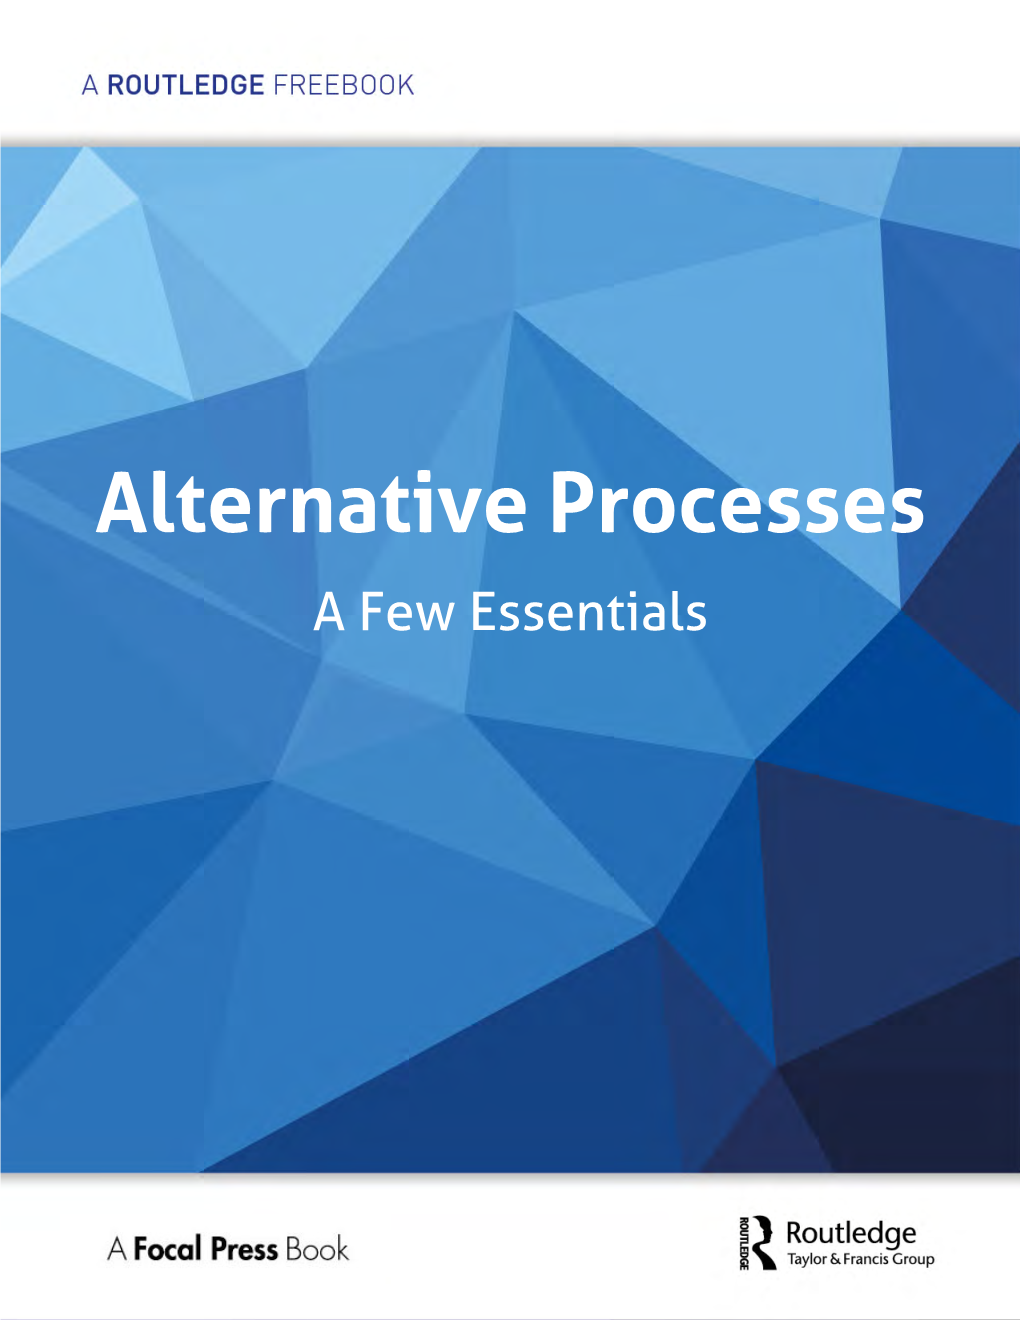 Alternative Processes a Few Essentials Introduction